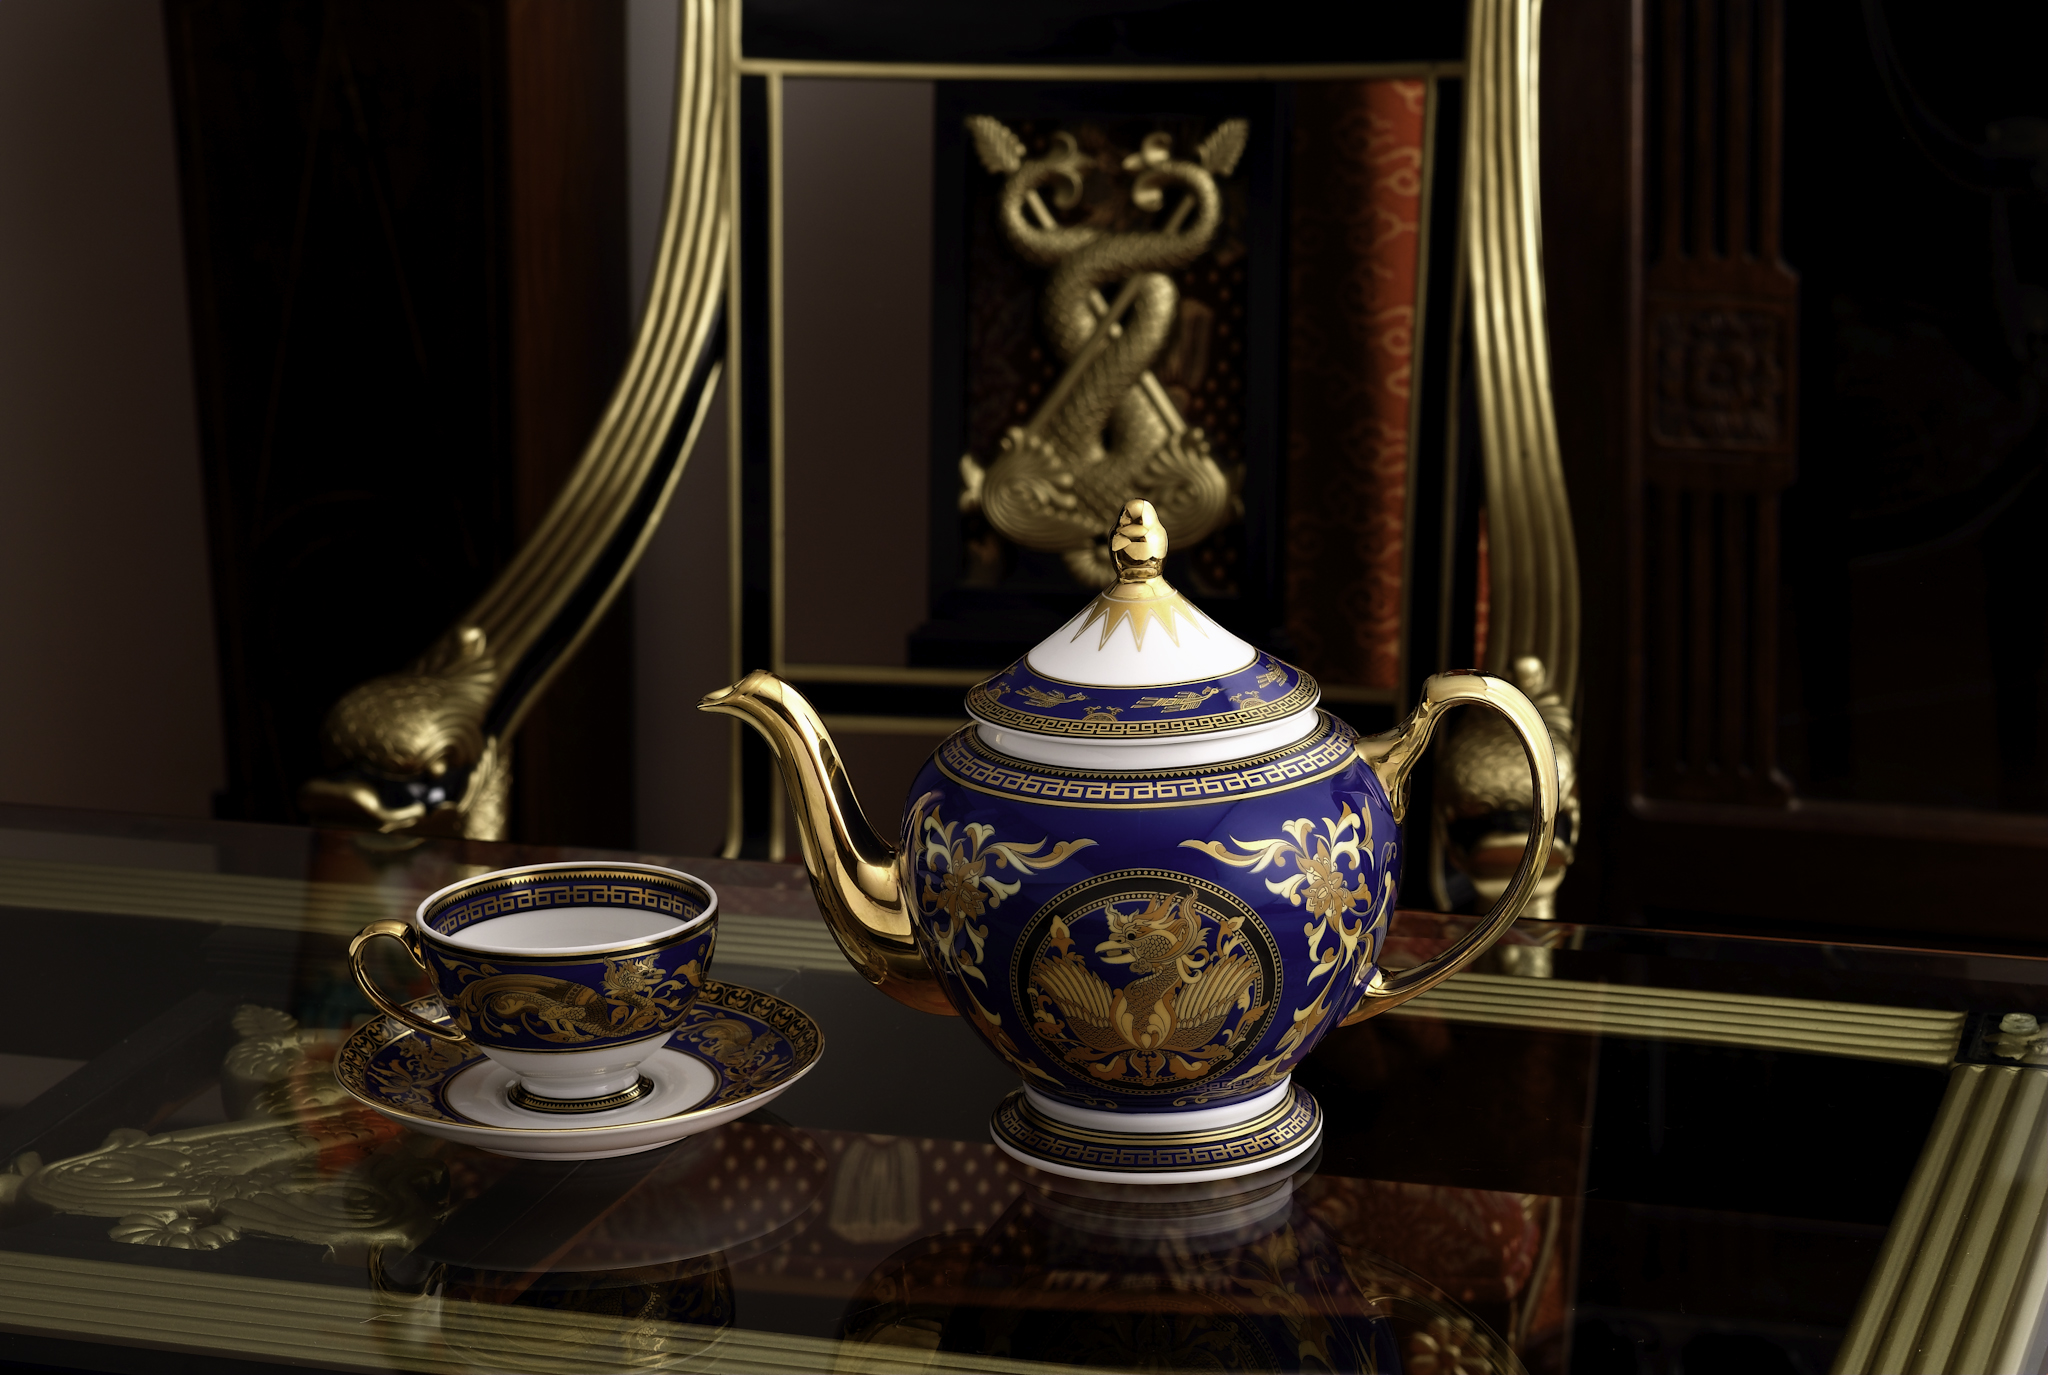 Gốm sứ Hoàng Gia – Cửa hàng gốm sứ Minh Long và Bát Tràng